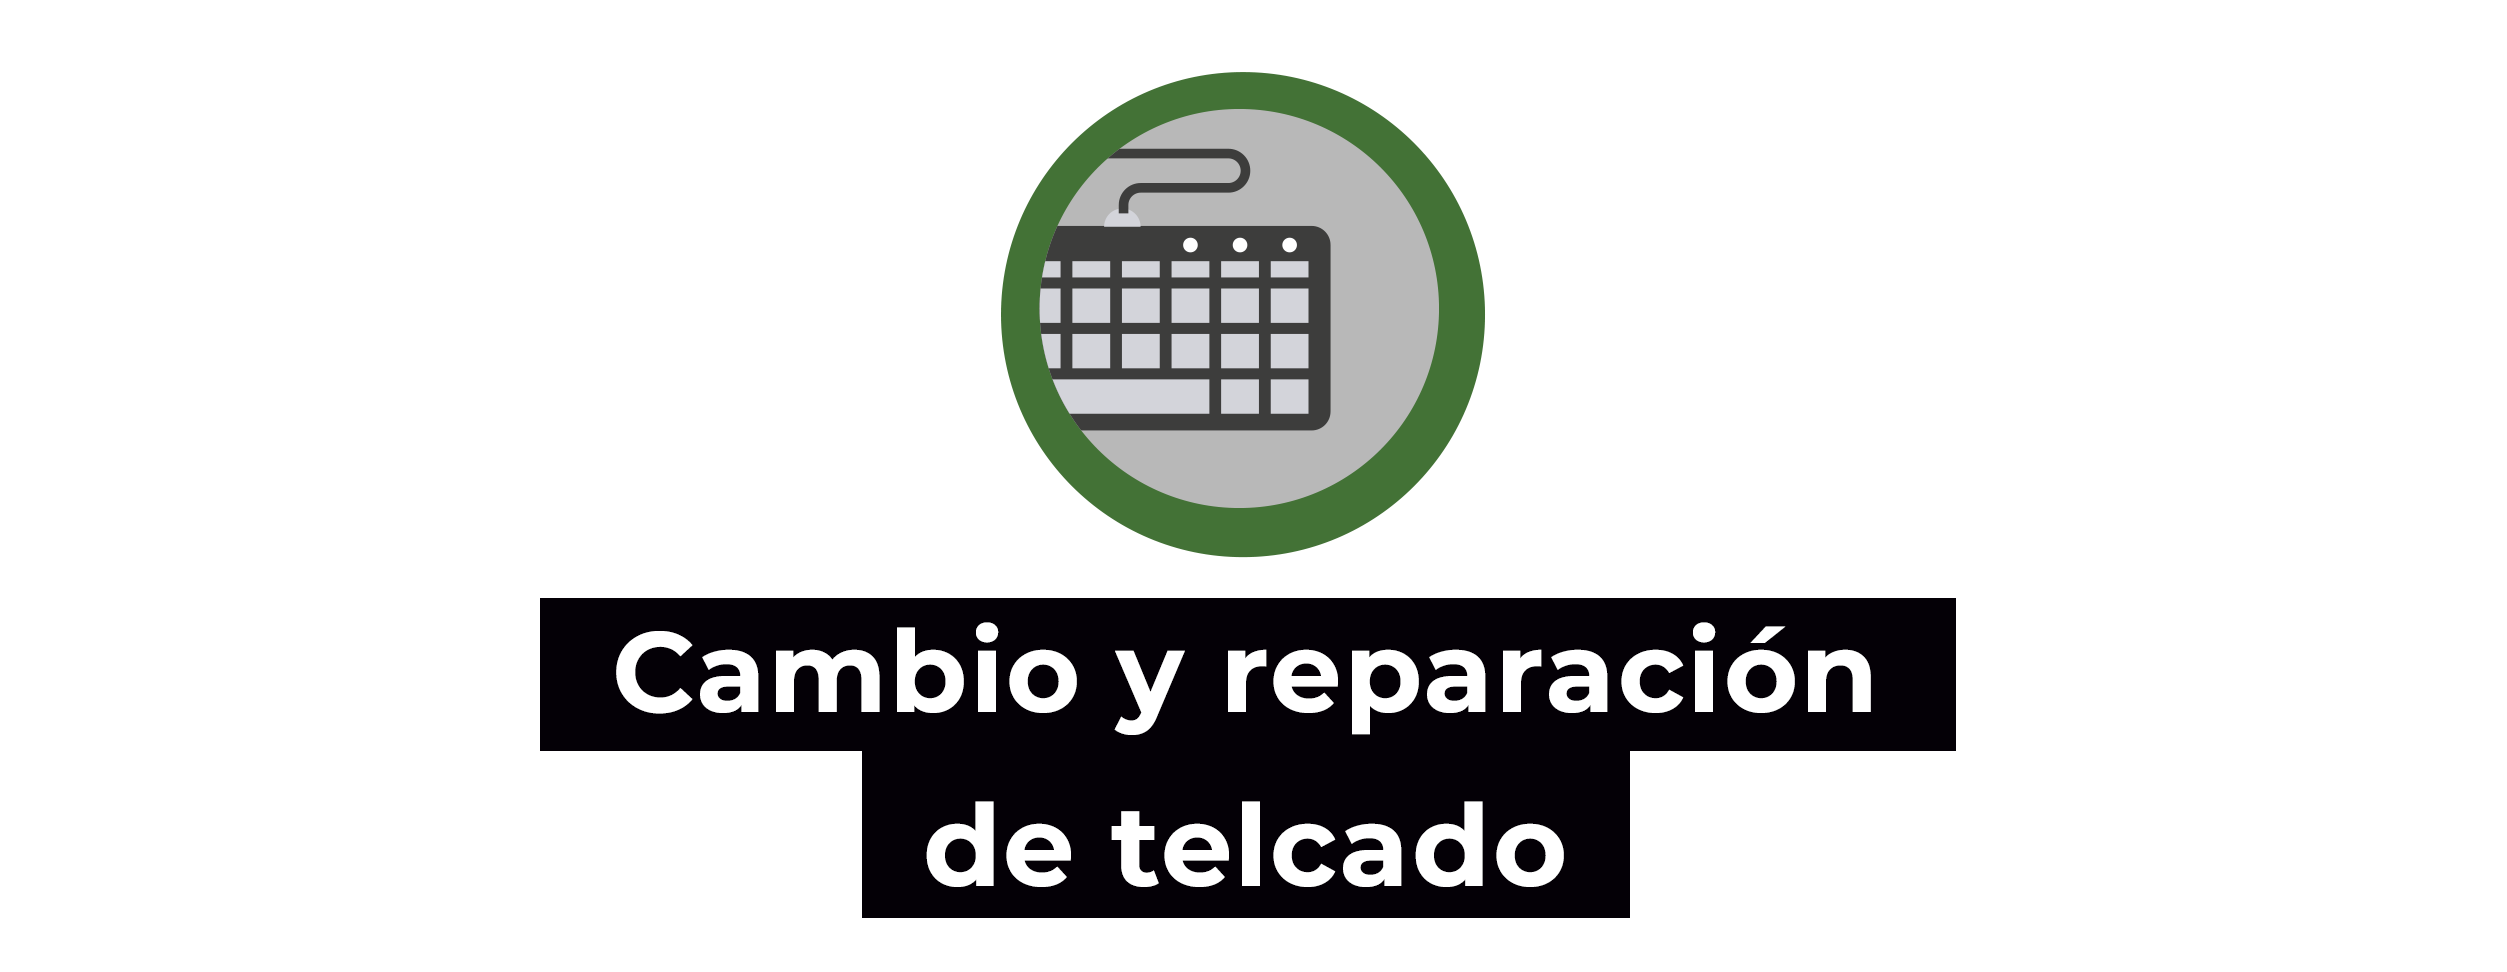 Reparacion Laptop en Mexico